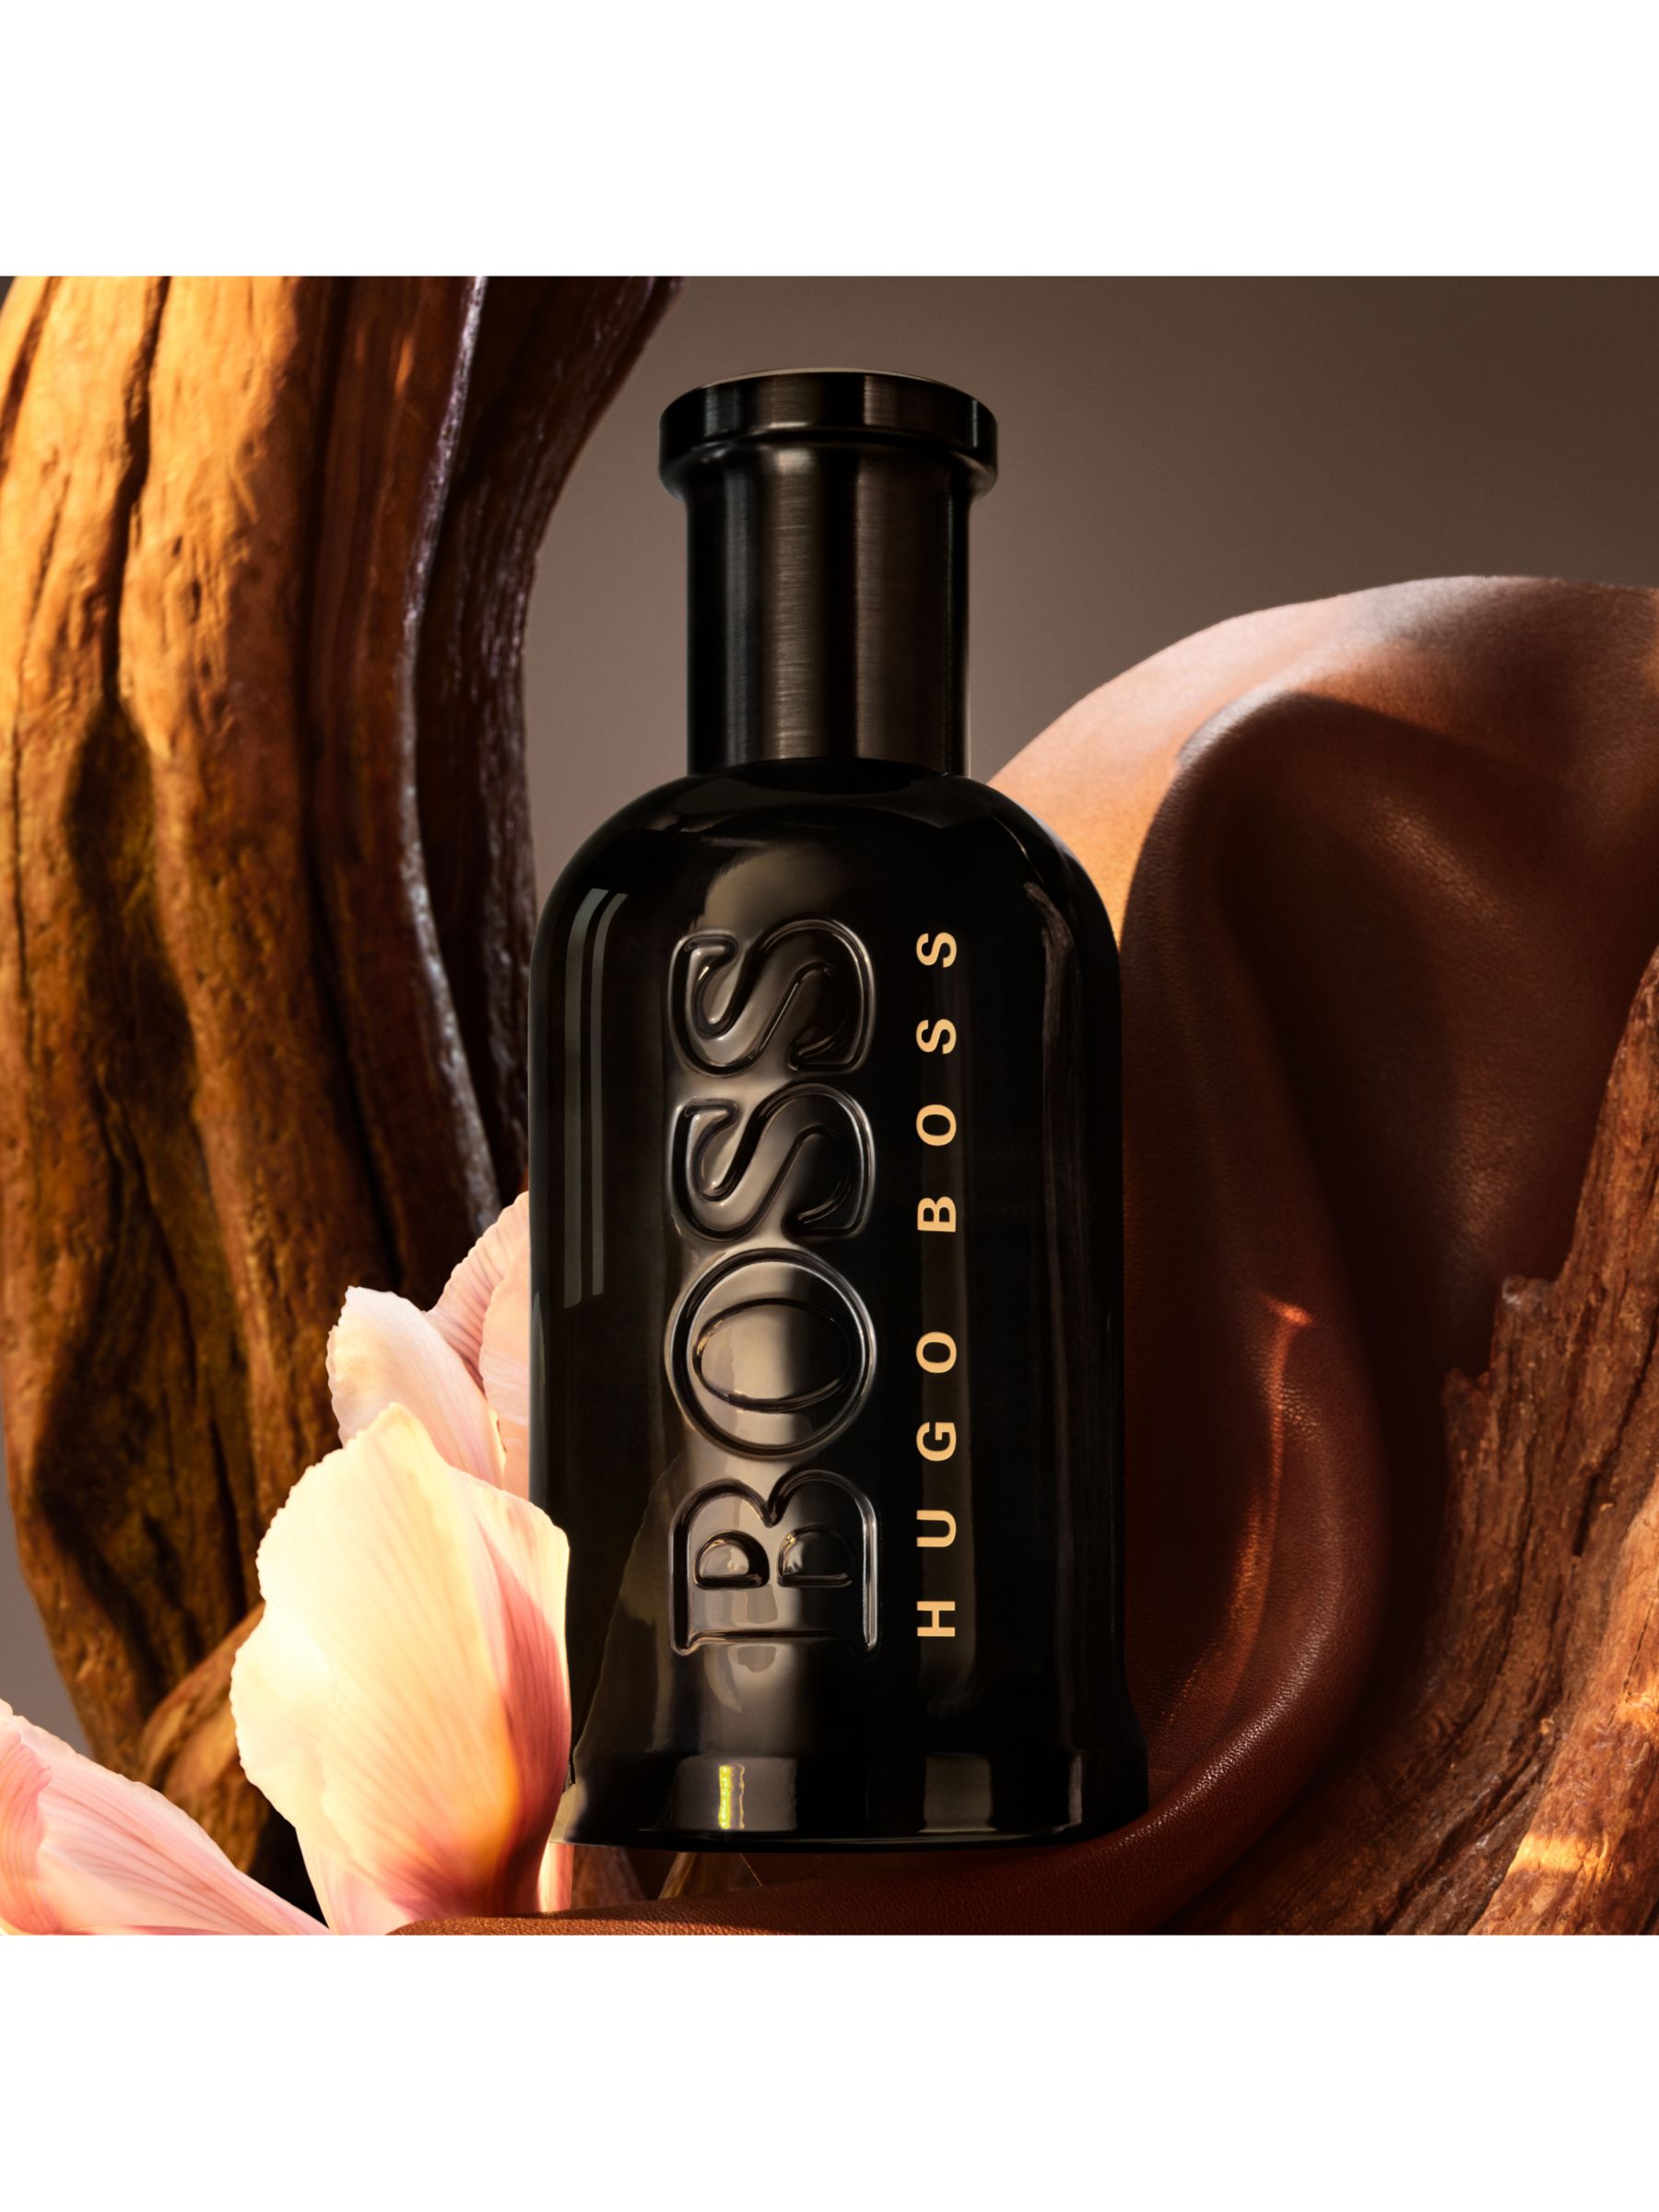 HUGO BOSS BOSS Bottled Parfum, 50ml 3